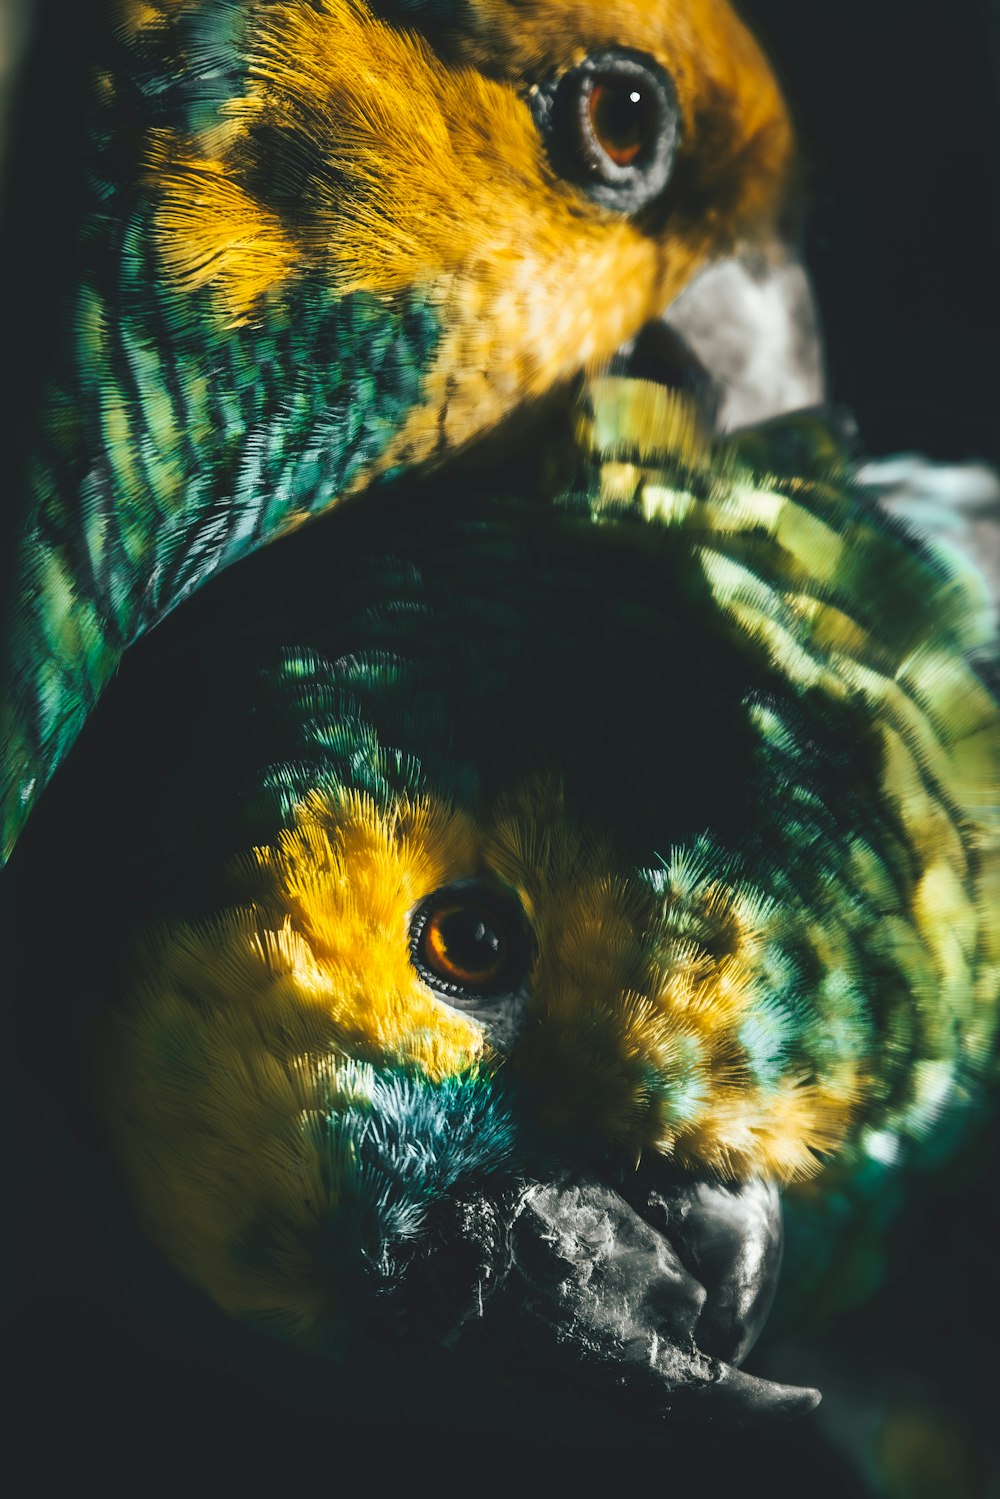 Un primer plano de un pájaro con plumas amarillas y verdes